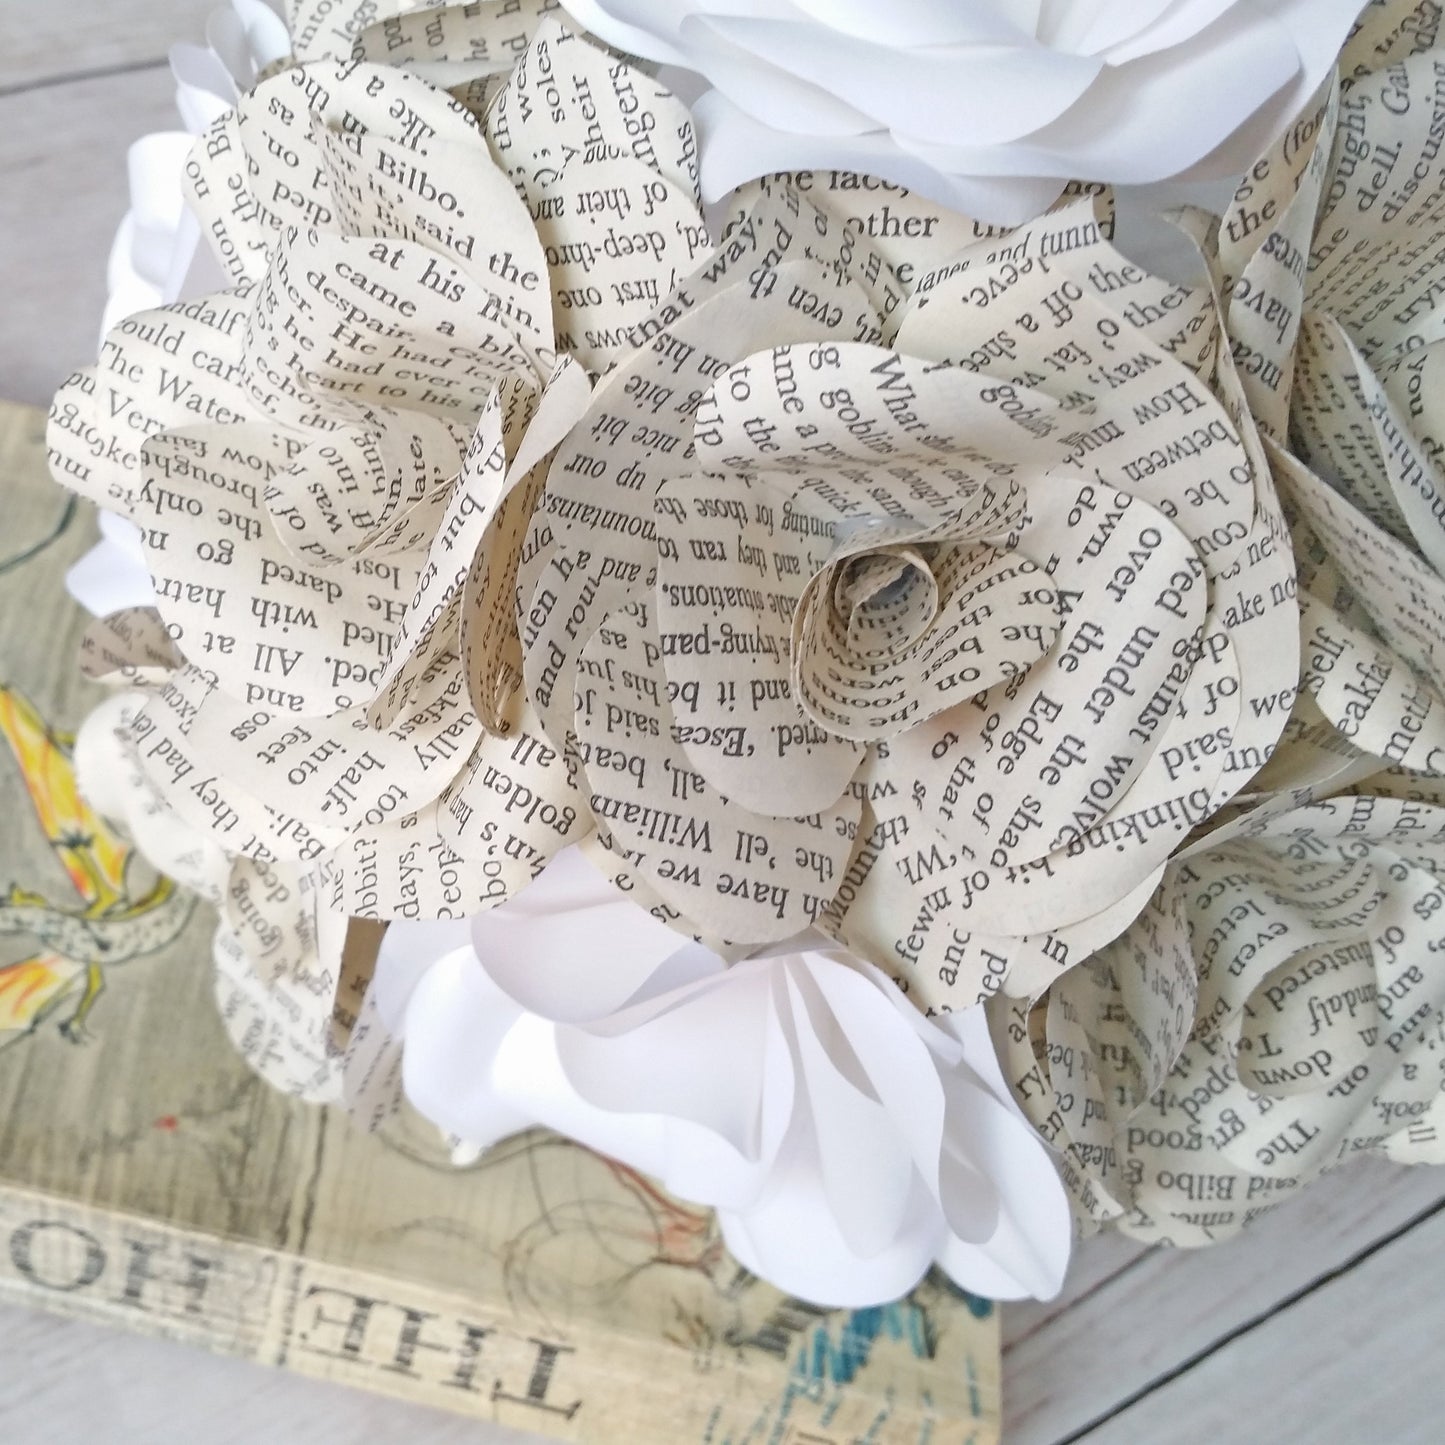 The Hobbit Paper Flower Bridal Bouquet